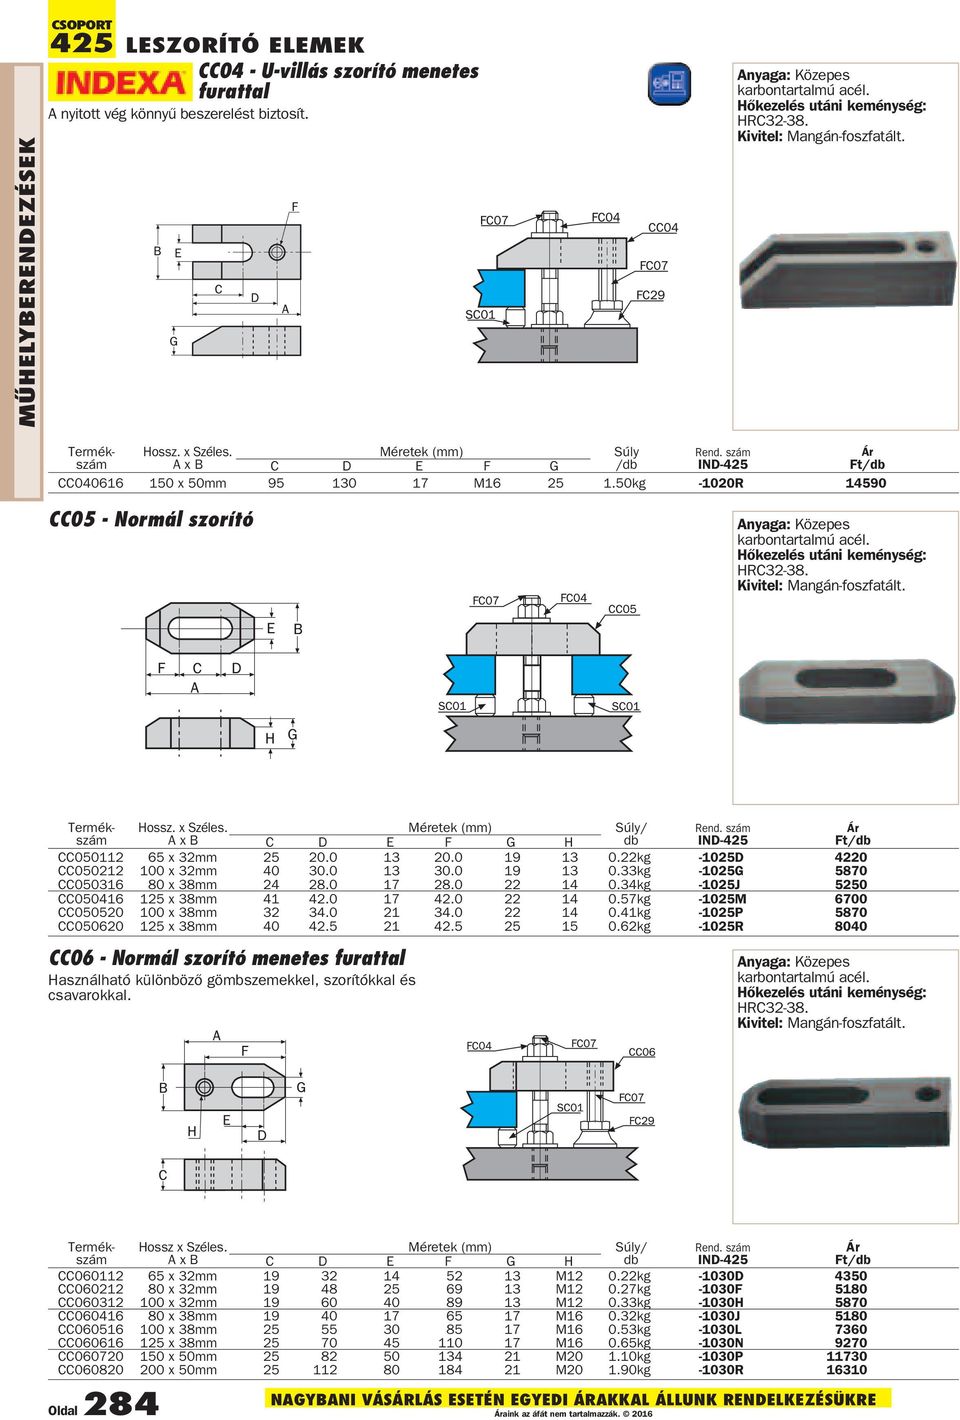 50kg -1020R 14590 CC05 - Normál szorító Anyaga: Közepes karbontartalmú acél. Hõkezelés utáni keménység: HRC32-38. Kivitel: Mangán-foszfatált. Termék- Hossz. x Széles.